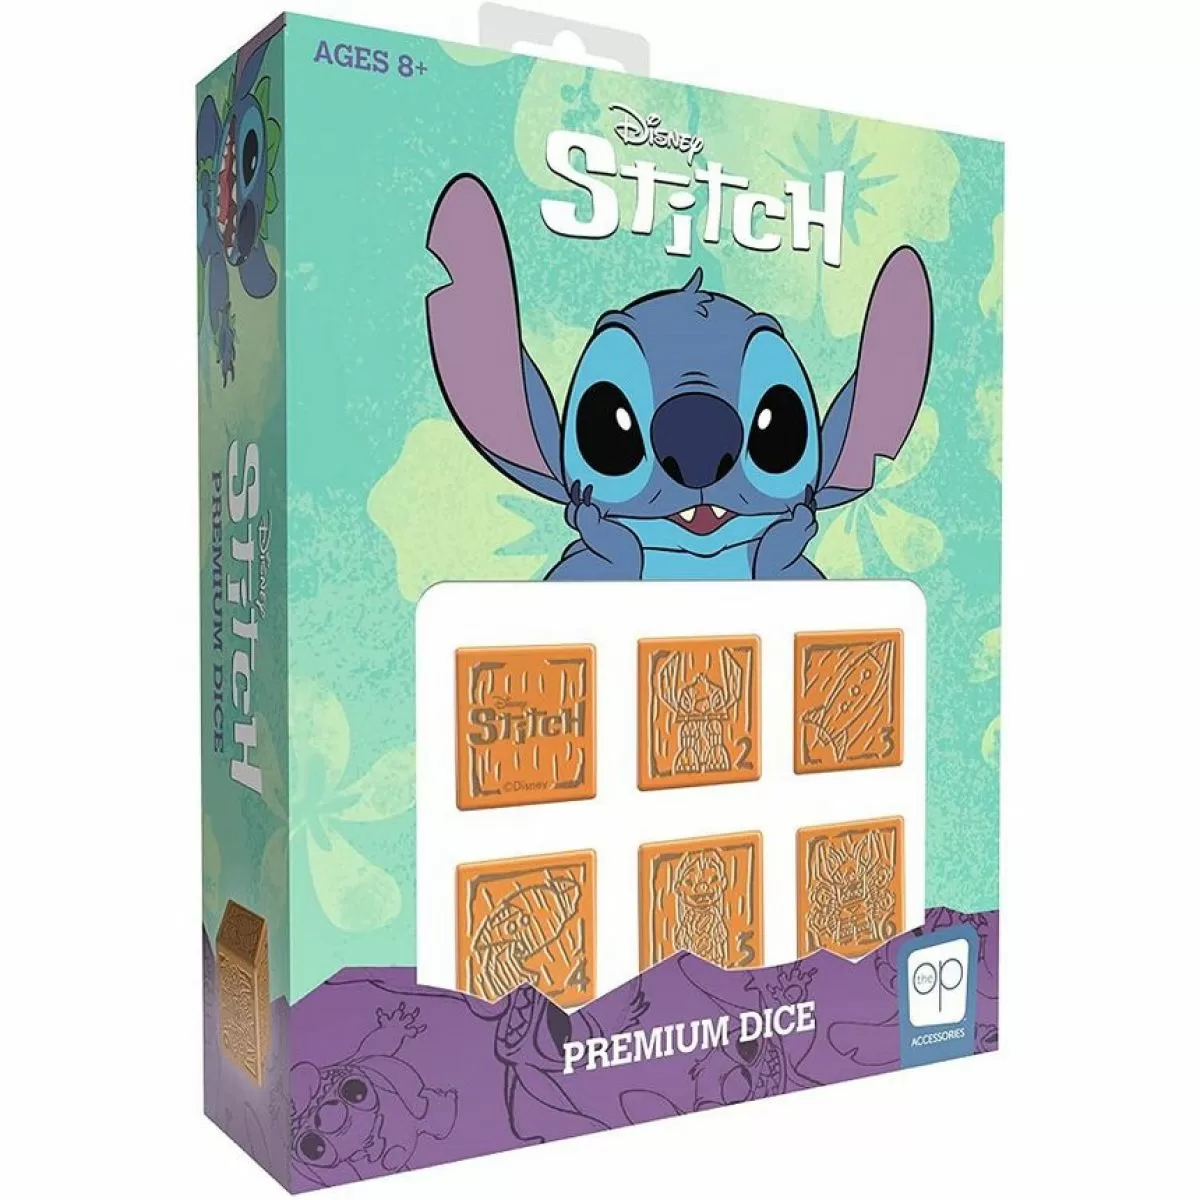 Disney Lilo & Stitch 3D Jewellery Box Storage Box